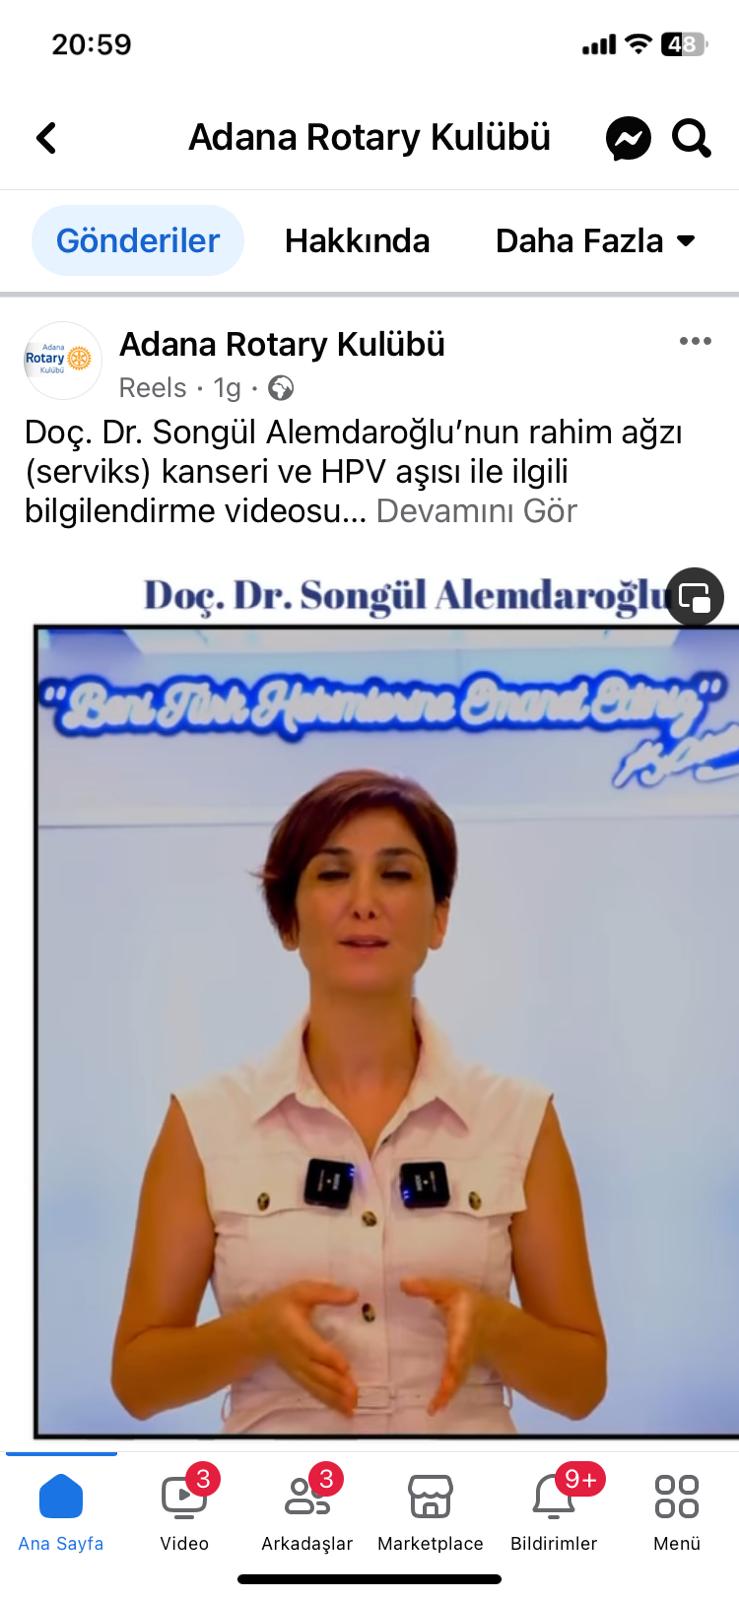 Adana Rotary Kulübü Serviks Kanseri ve HPV Aşısı Farkındalığı Yaratma Amacıyla Orijinal Video Yayınladı